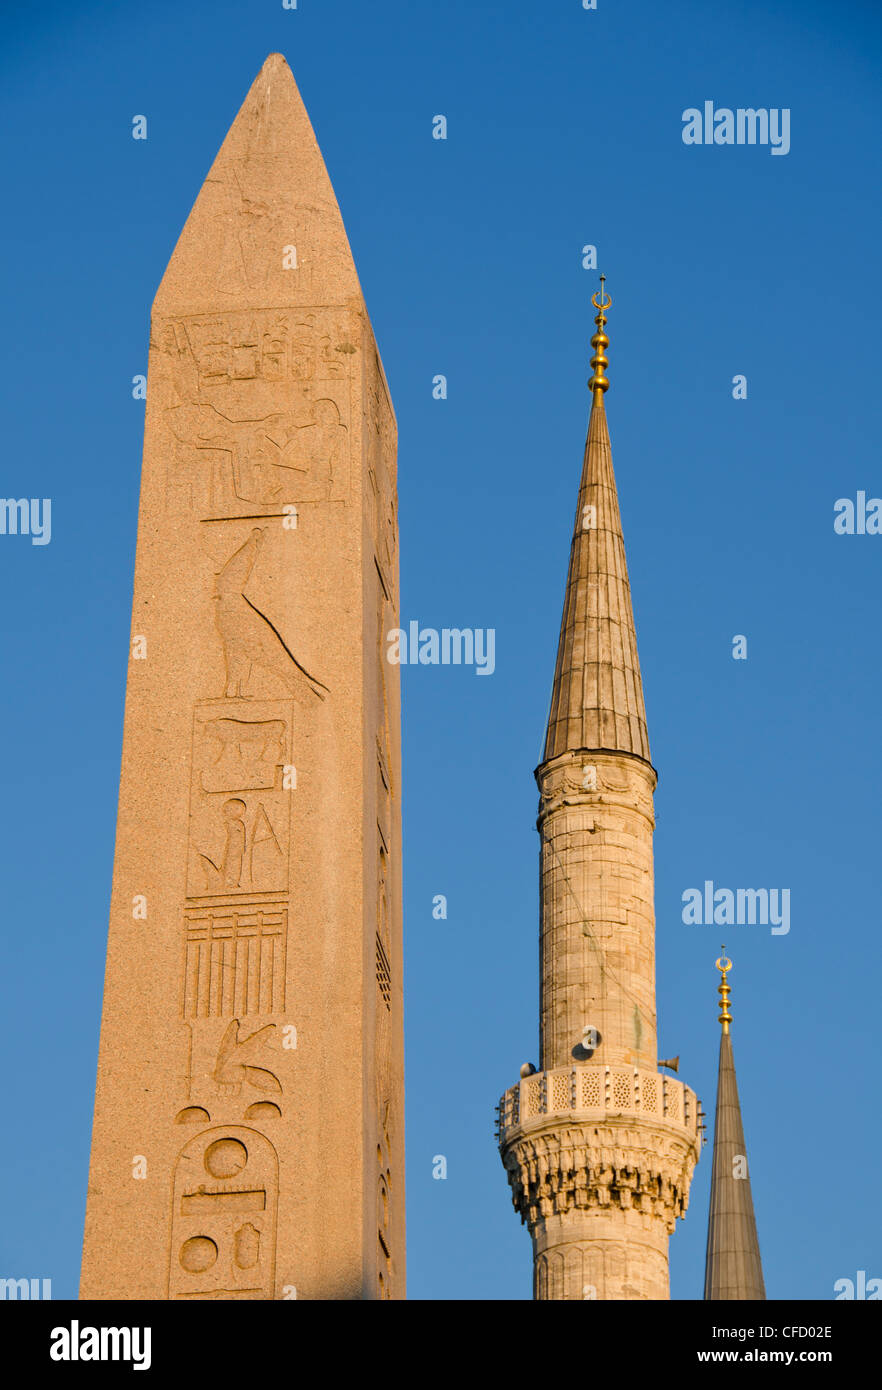 Ägyptische Säule und Spire von Sultan Ahmed Mosque (blaue Moschee), Istanbul, Türkei Stockfoto